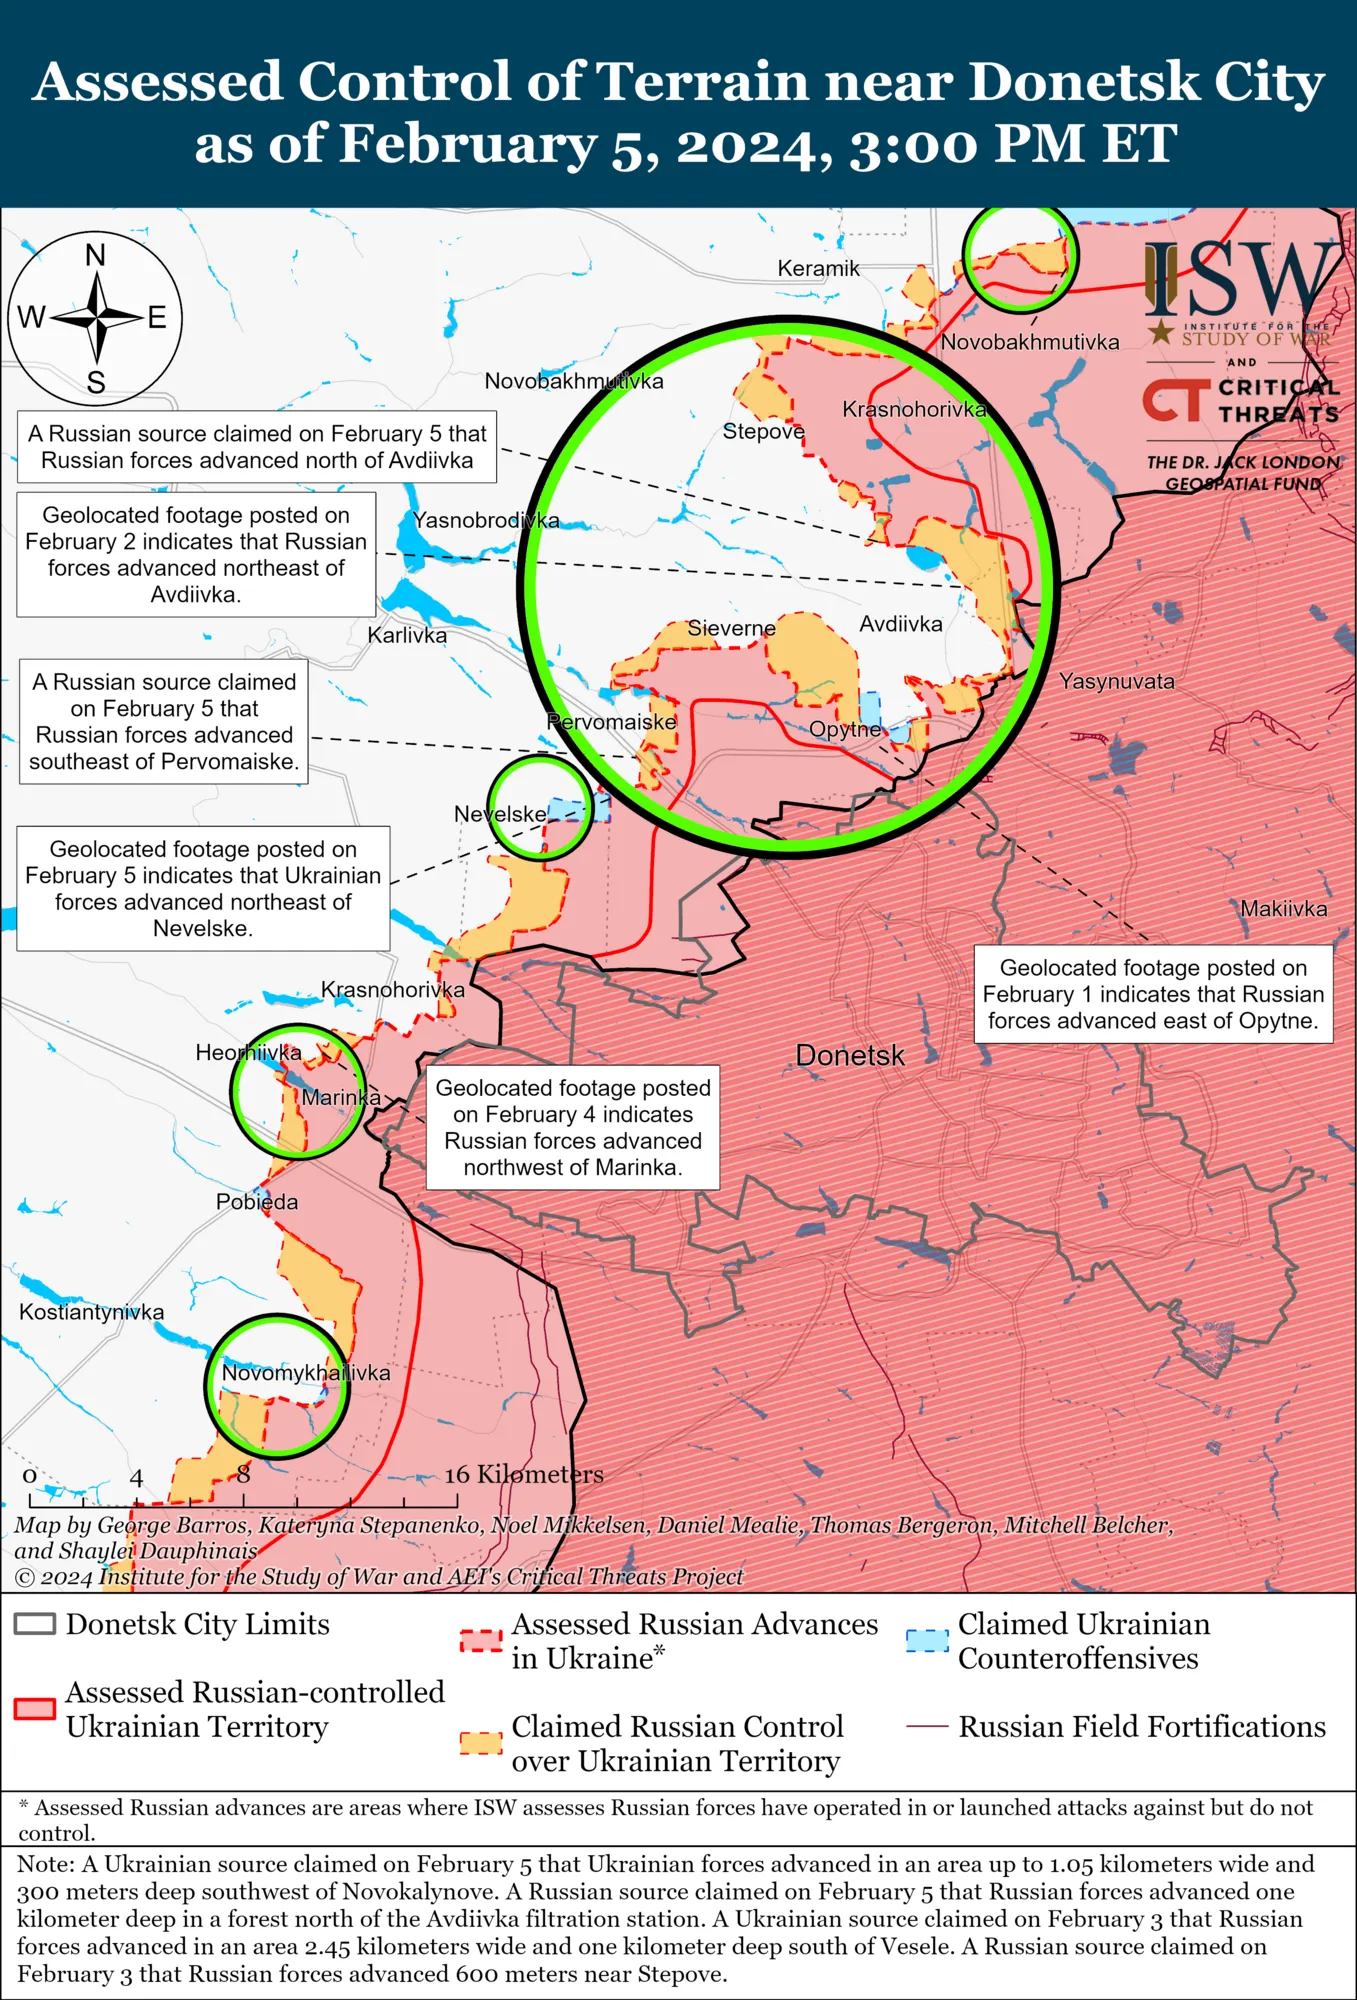 Украинские войска продвинулись возле Авдеевки, оккупанты наступают под Северском: карты